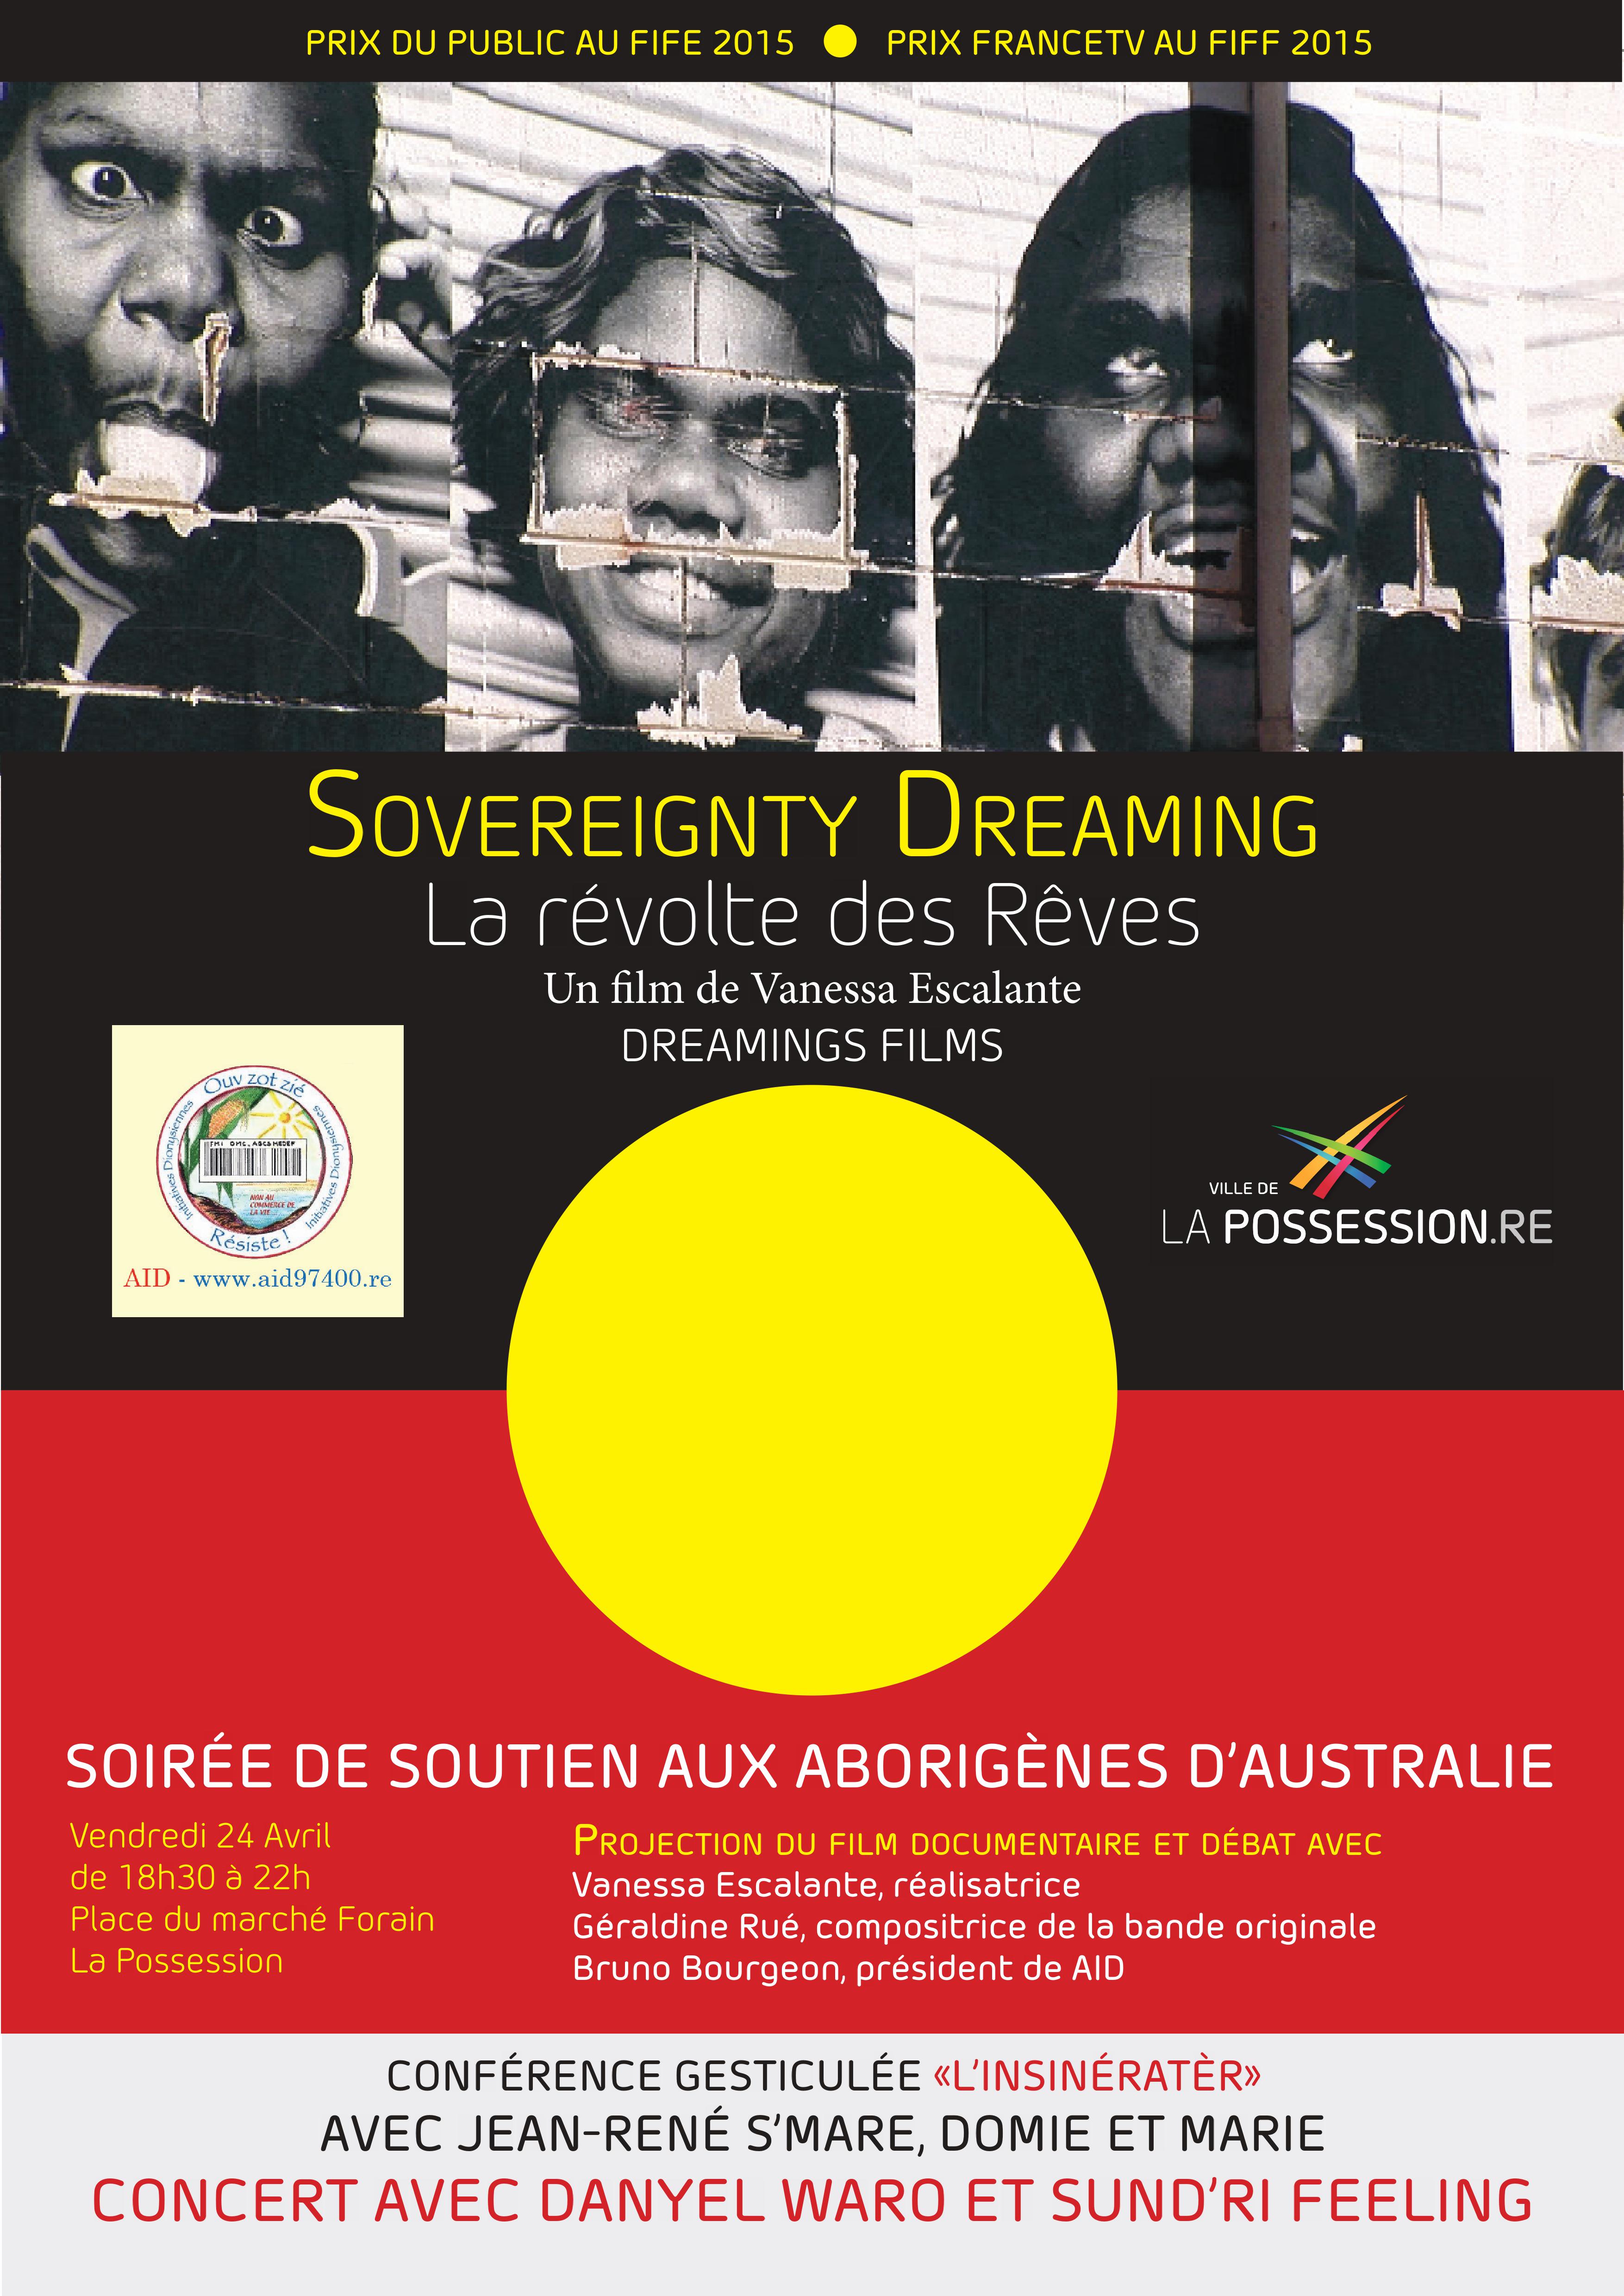 La Possession et l’association AID soutiennent les Terres Sacrées des Aborigènes d’Australie